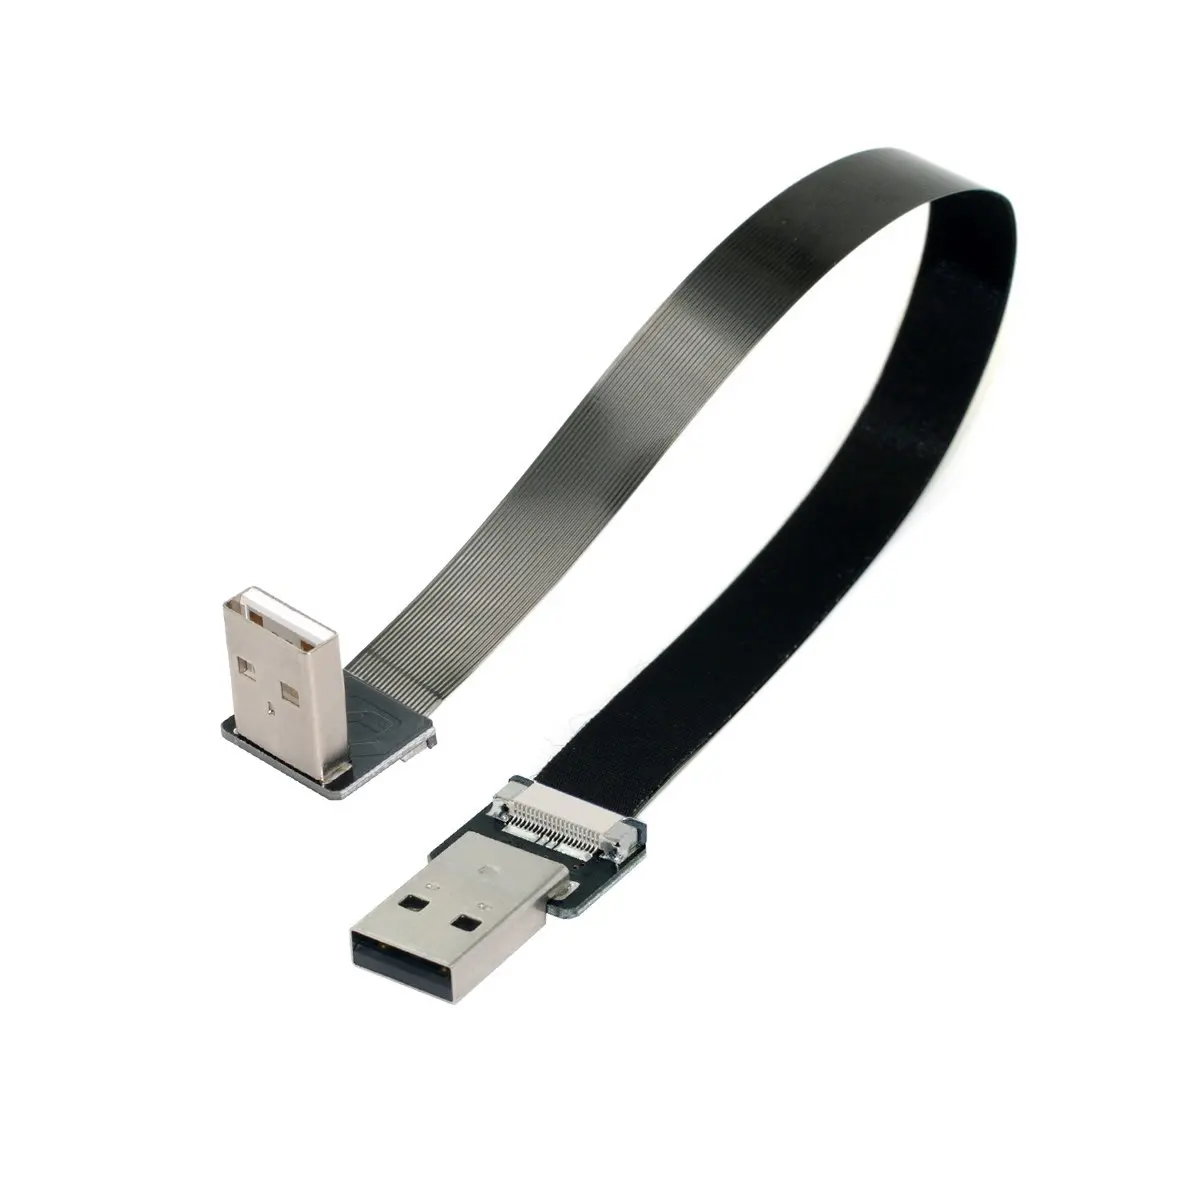 

Плоский тонкий кабель CYSM типа A USB 2,0 папа-папа тип А для передачи данных FPC под углом 90 градусов для FPV, диска, сканера и принтера